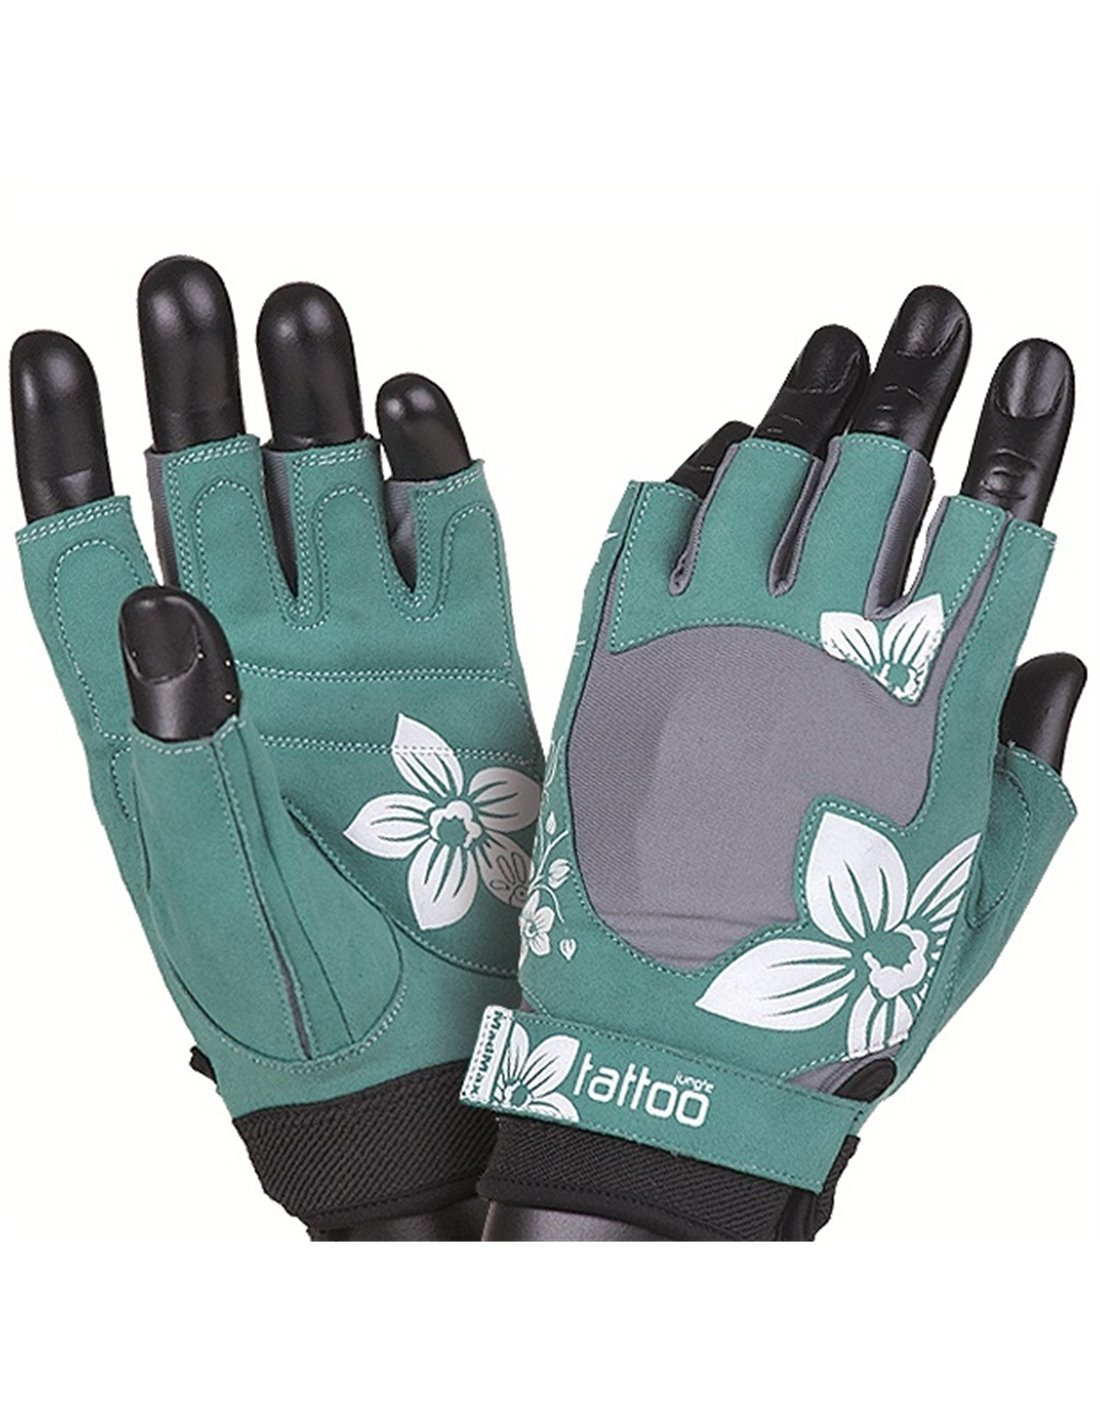 JUNGLE MFG 710 (M), 1 pcs, MadMax. Gloves. 